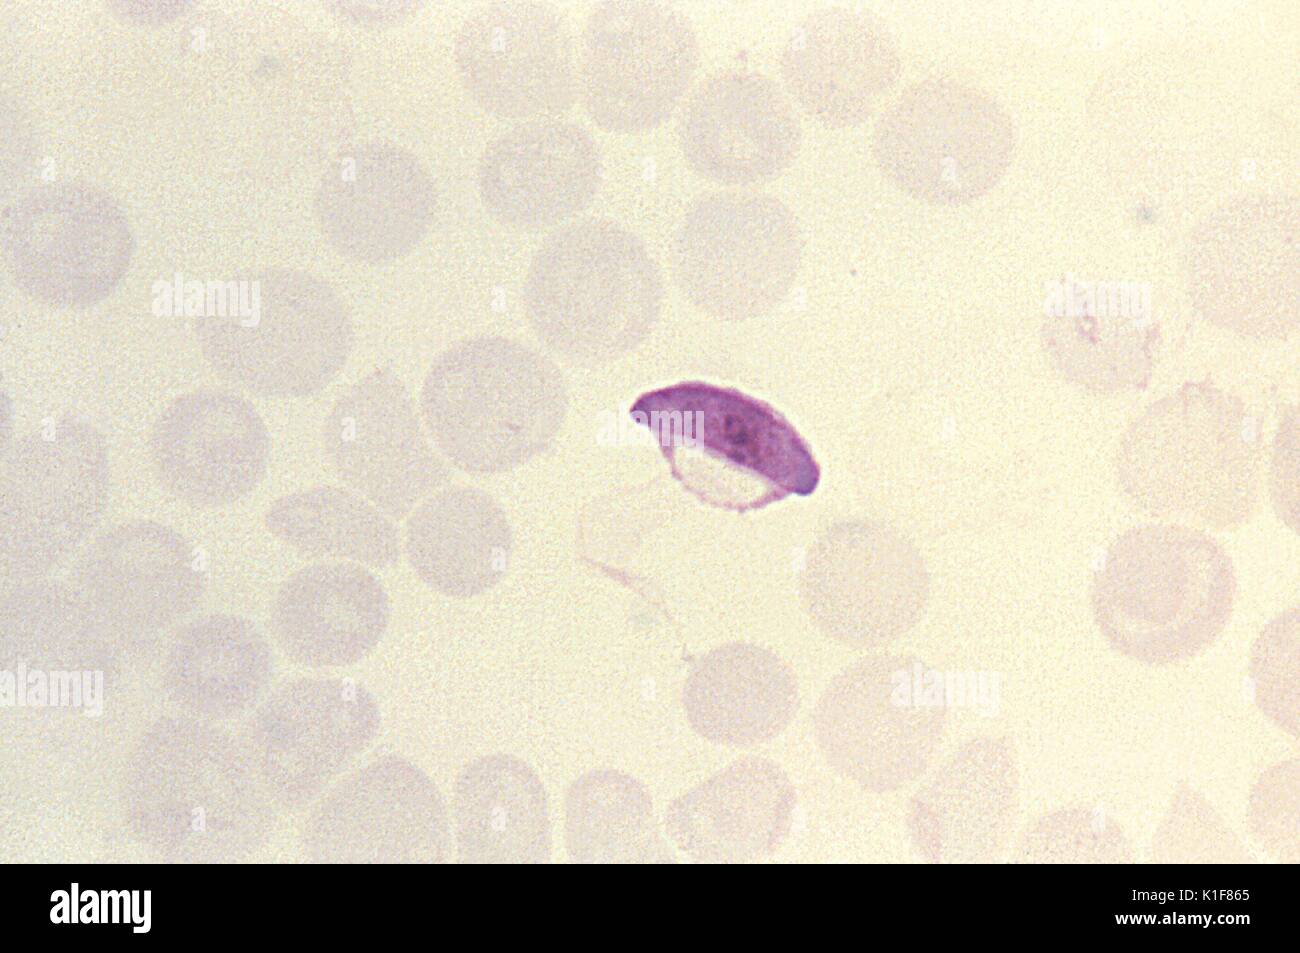 Diese thin film Giemsa-befleckte Schliffbild zeigt eine parasitäre Plasmodium falciparum microgametocyte. Infektion mit einer Art von Malaria, P. falciparum, wenn sie nicht sofort behandelt, Nierenversagen führen kann. Schwellung des Bauches, Augen, Hände und Füße sind einige der Symptome der nephrosis auf durch die beschädigten Nieren gebracht. Bild mit freundlicher Genehmigung von CDC/Dr. Melvin, Steven Glenn, 1973. Stockfoto